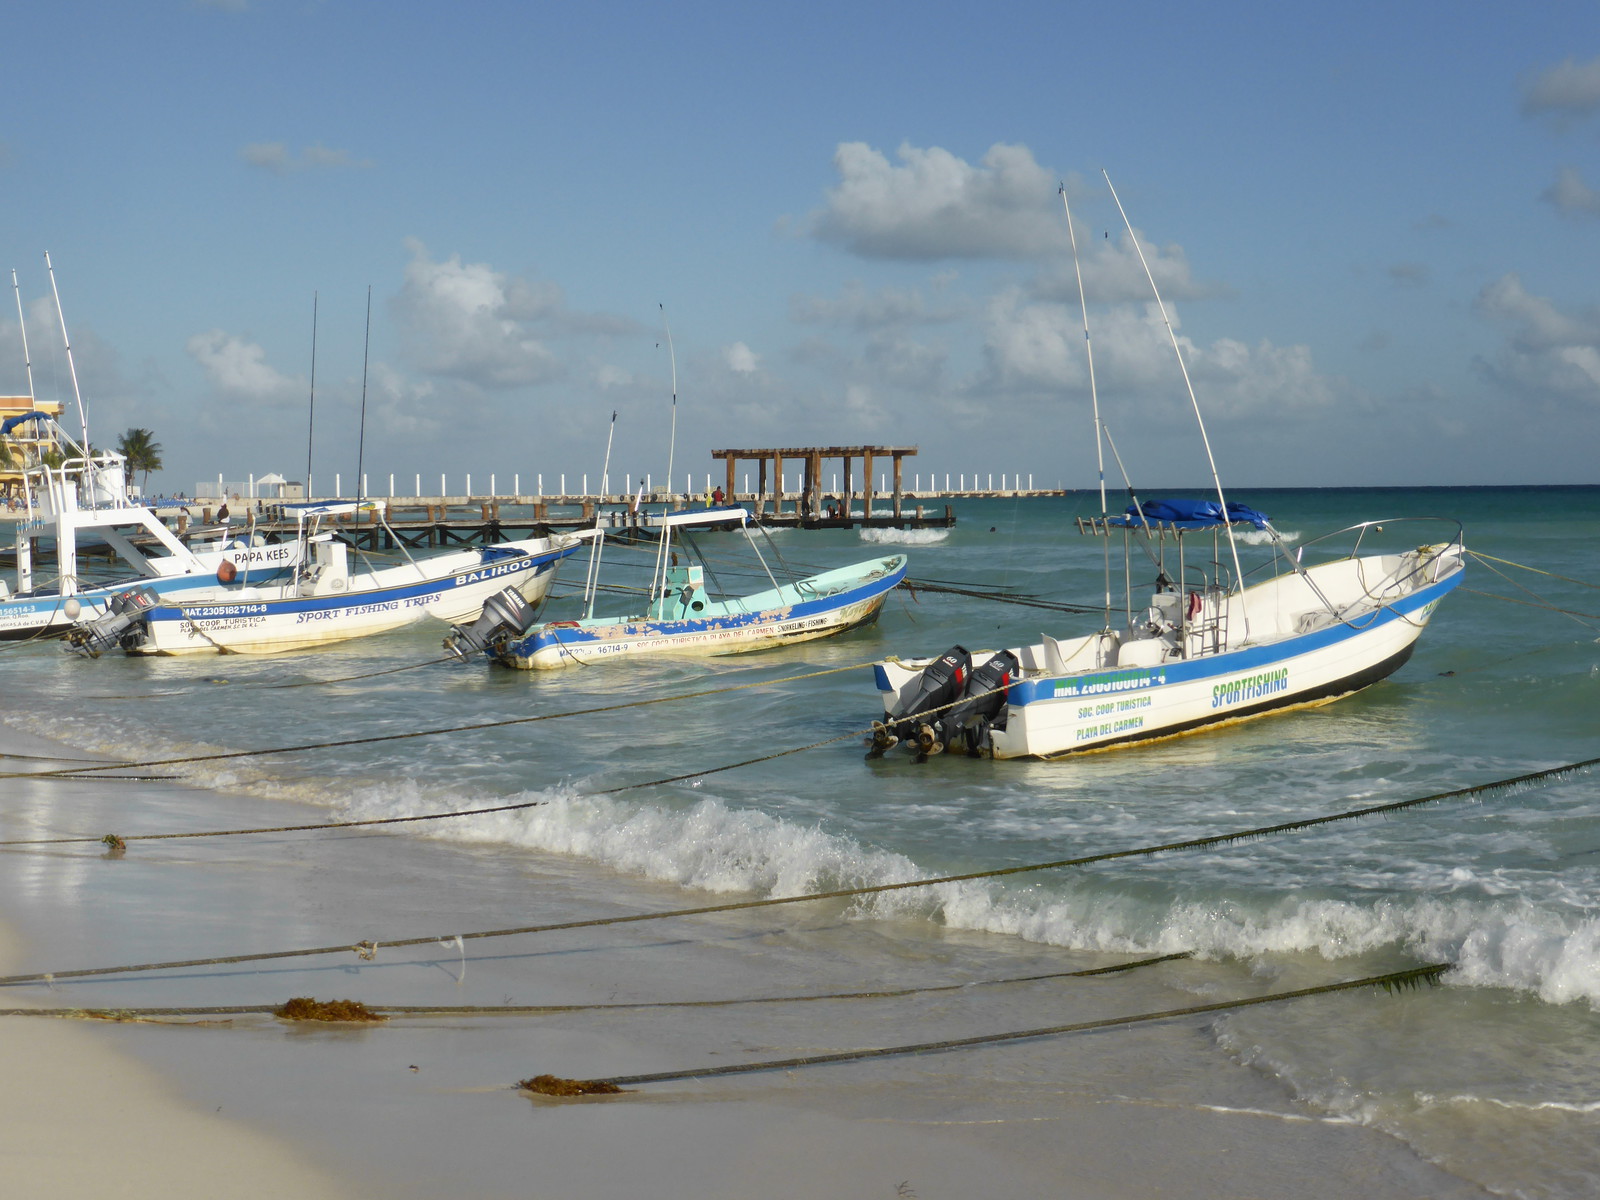 Boats on the beach in Playa del Carmen